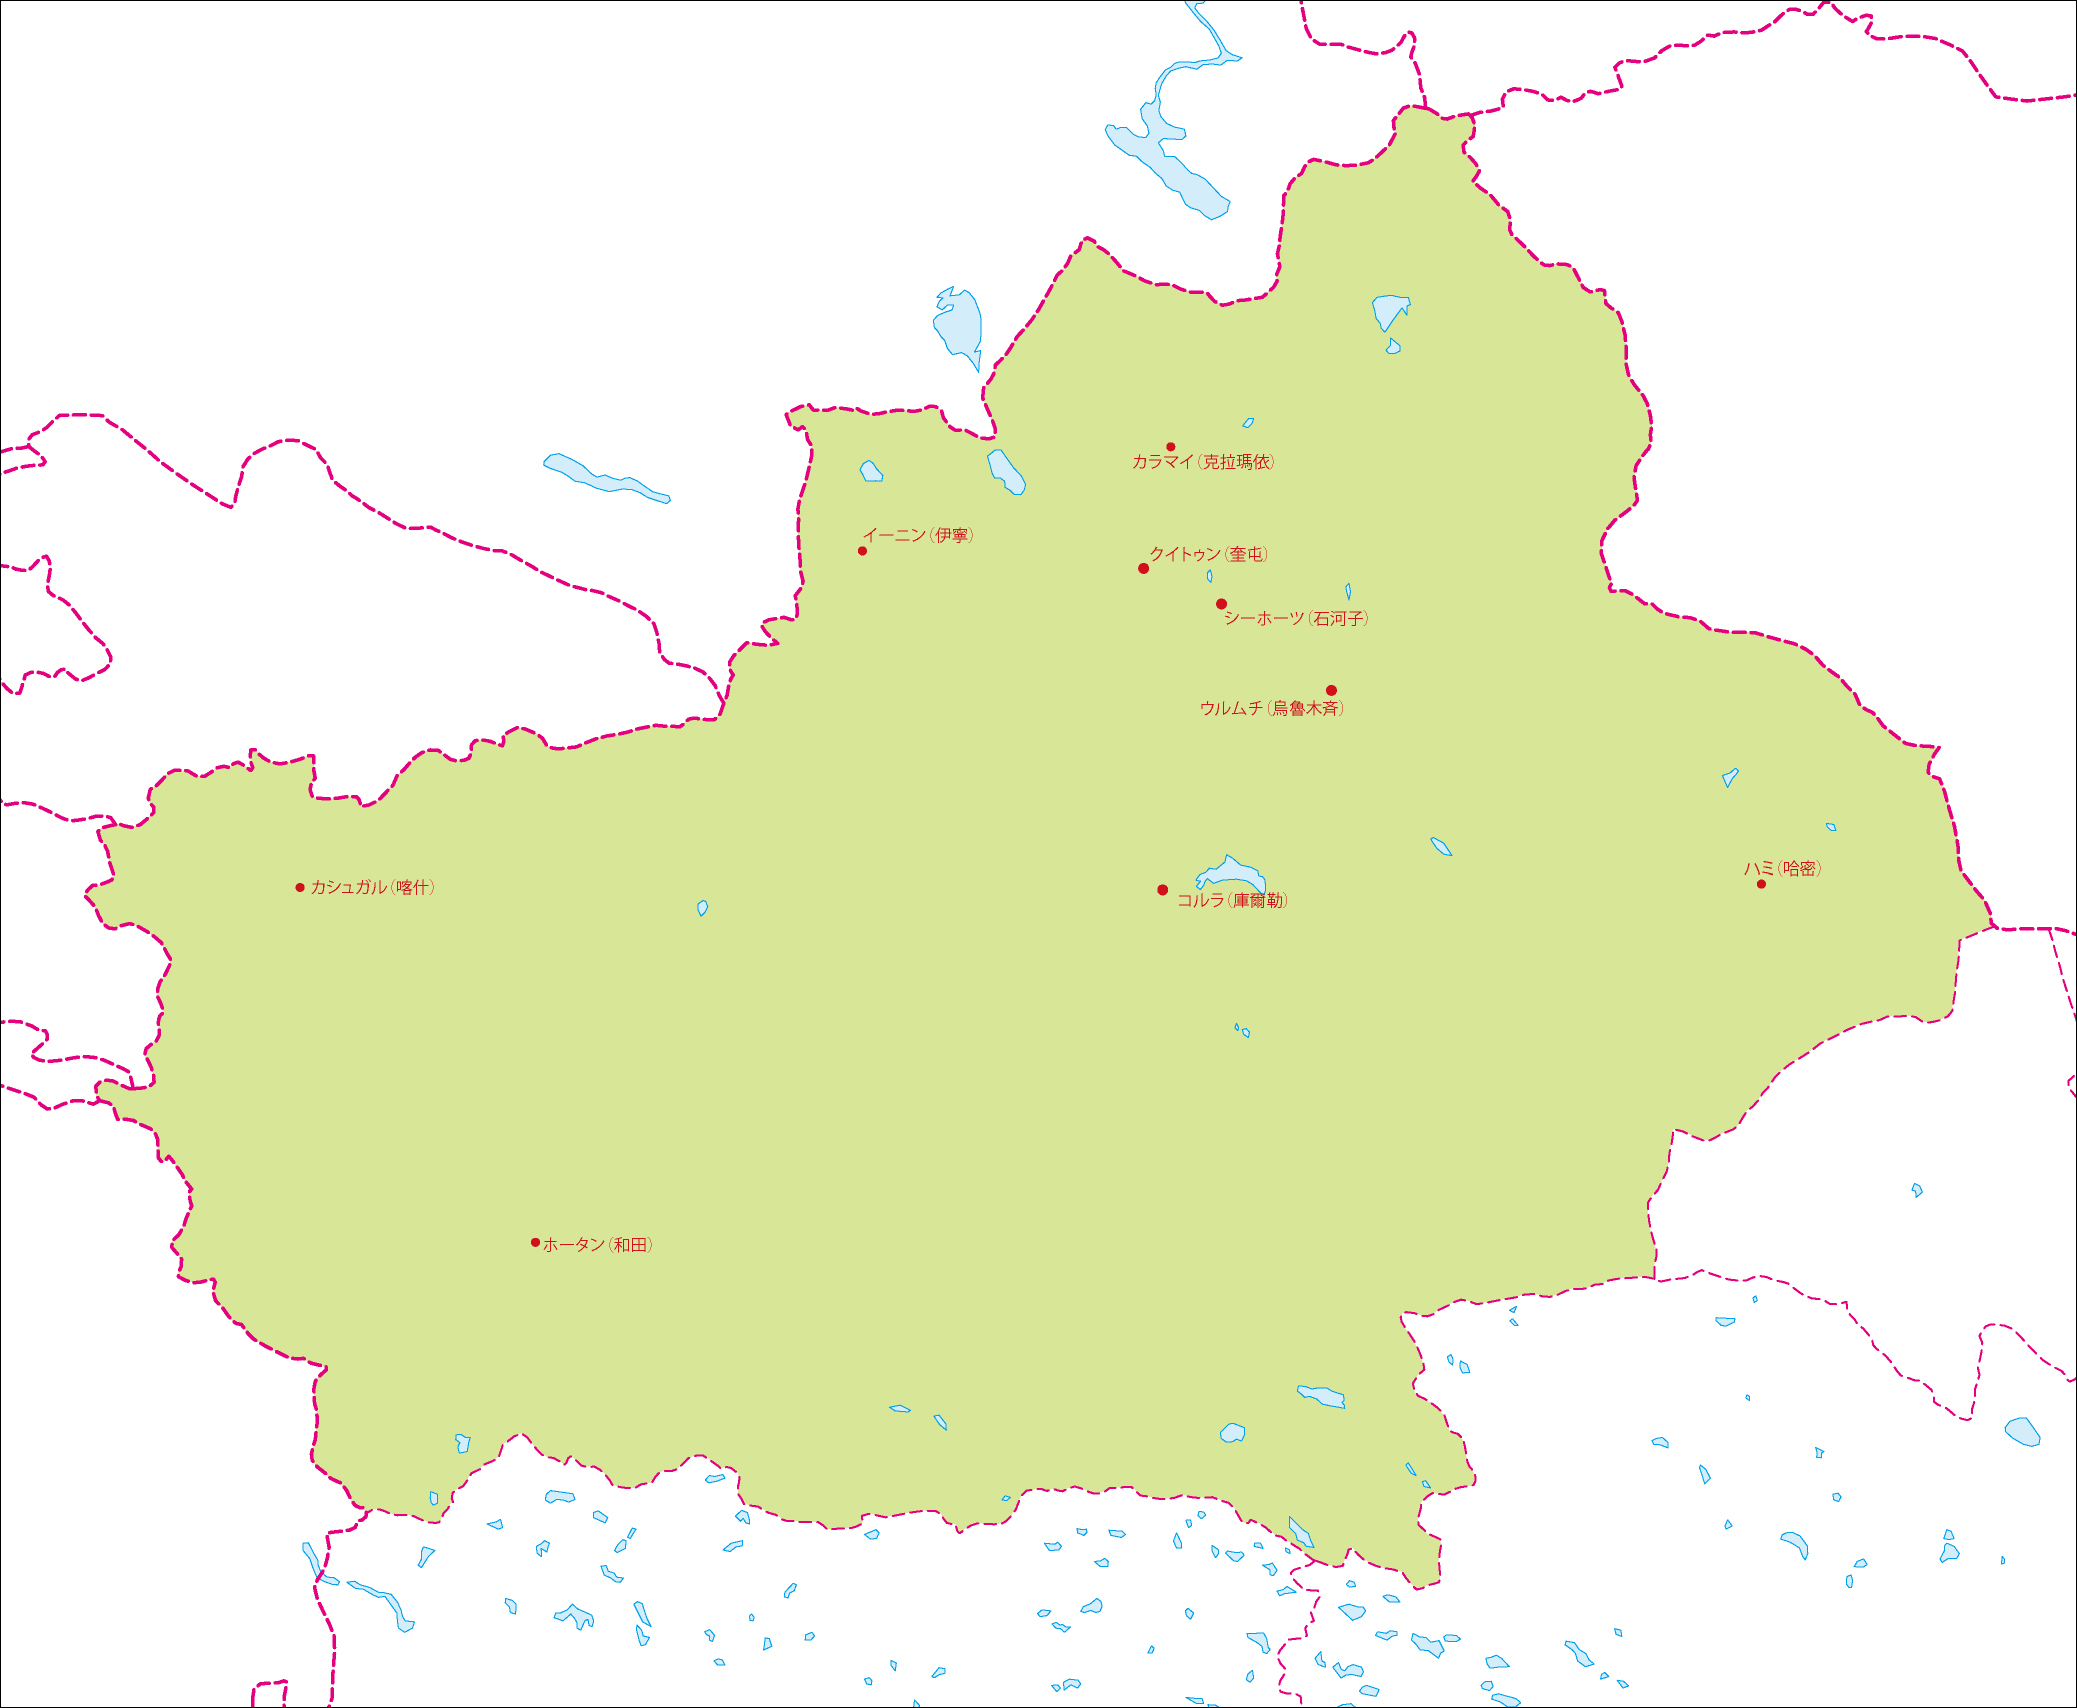 新疆ウイグル自治区地図(主な都市あり)のフリーデータの画像